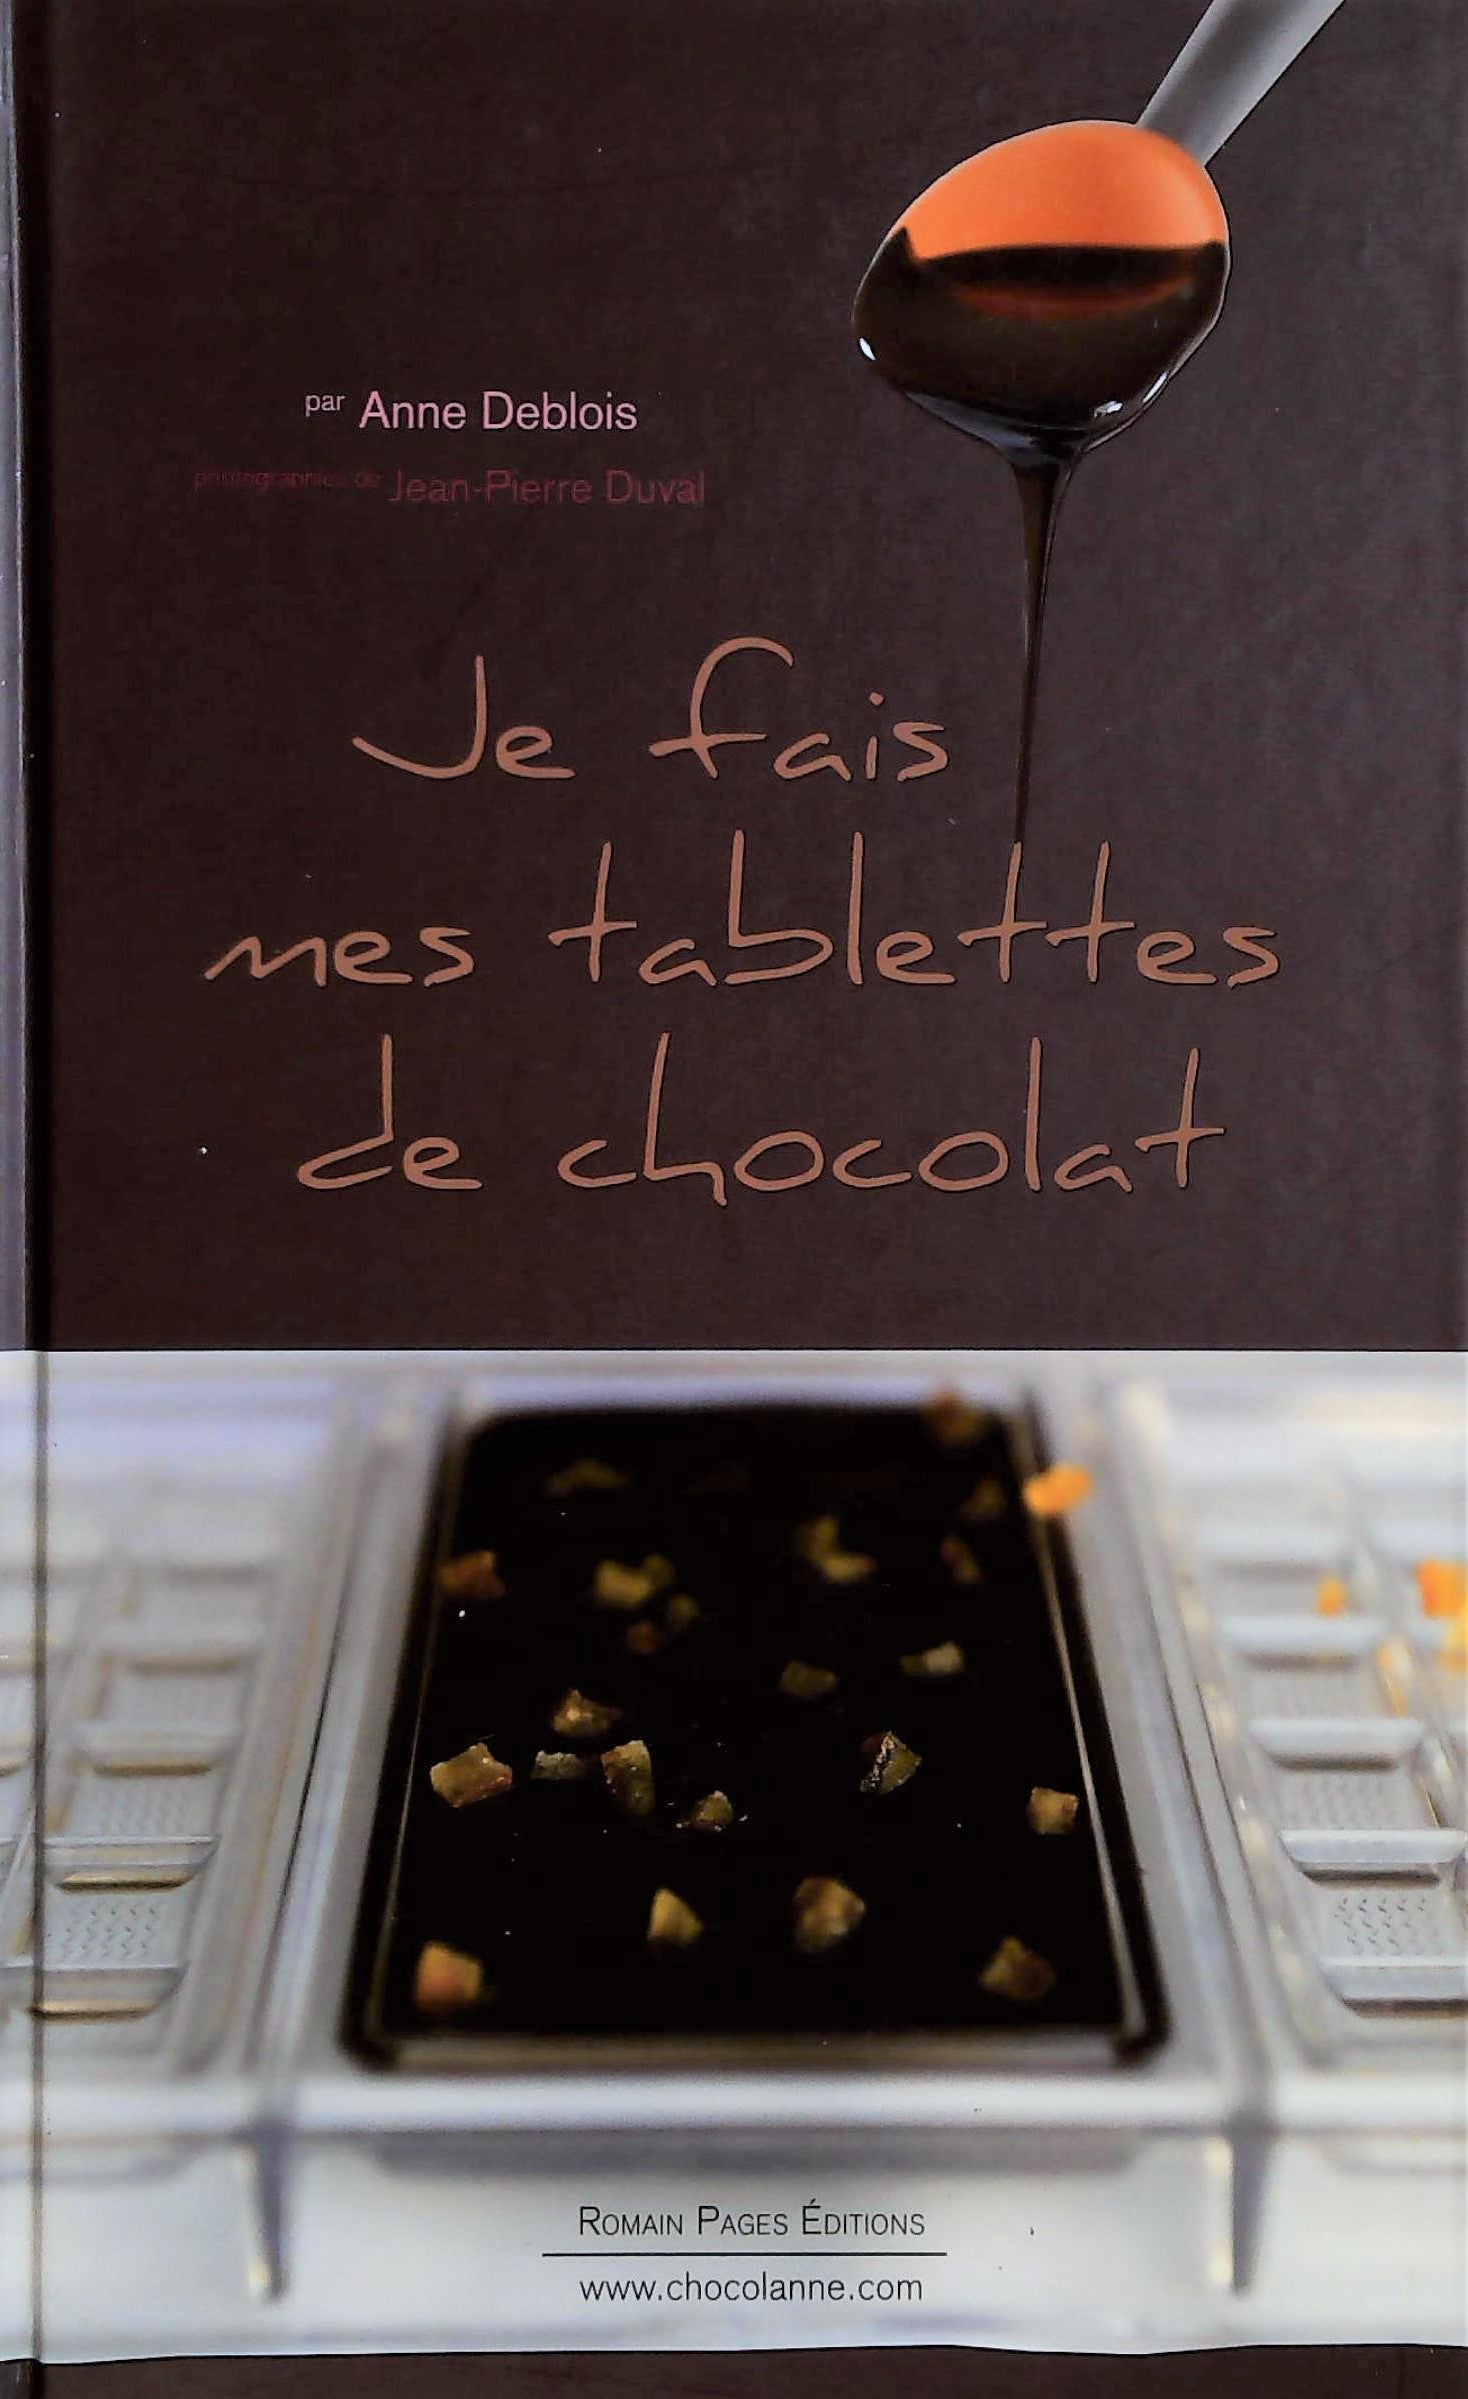 Livre ISBN 2843503167 Je fais mes tablettes de chocolat (Anne Deblois)